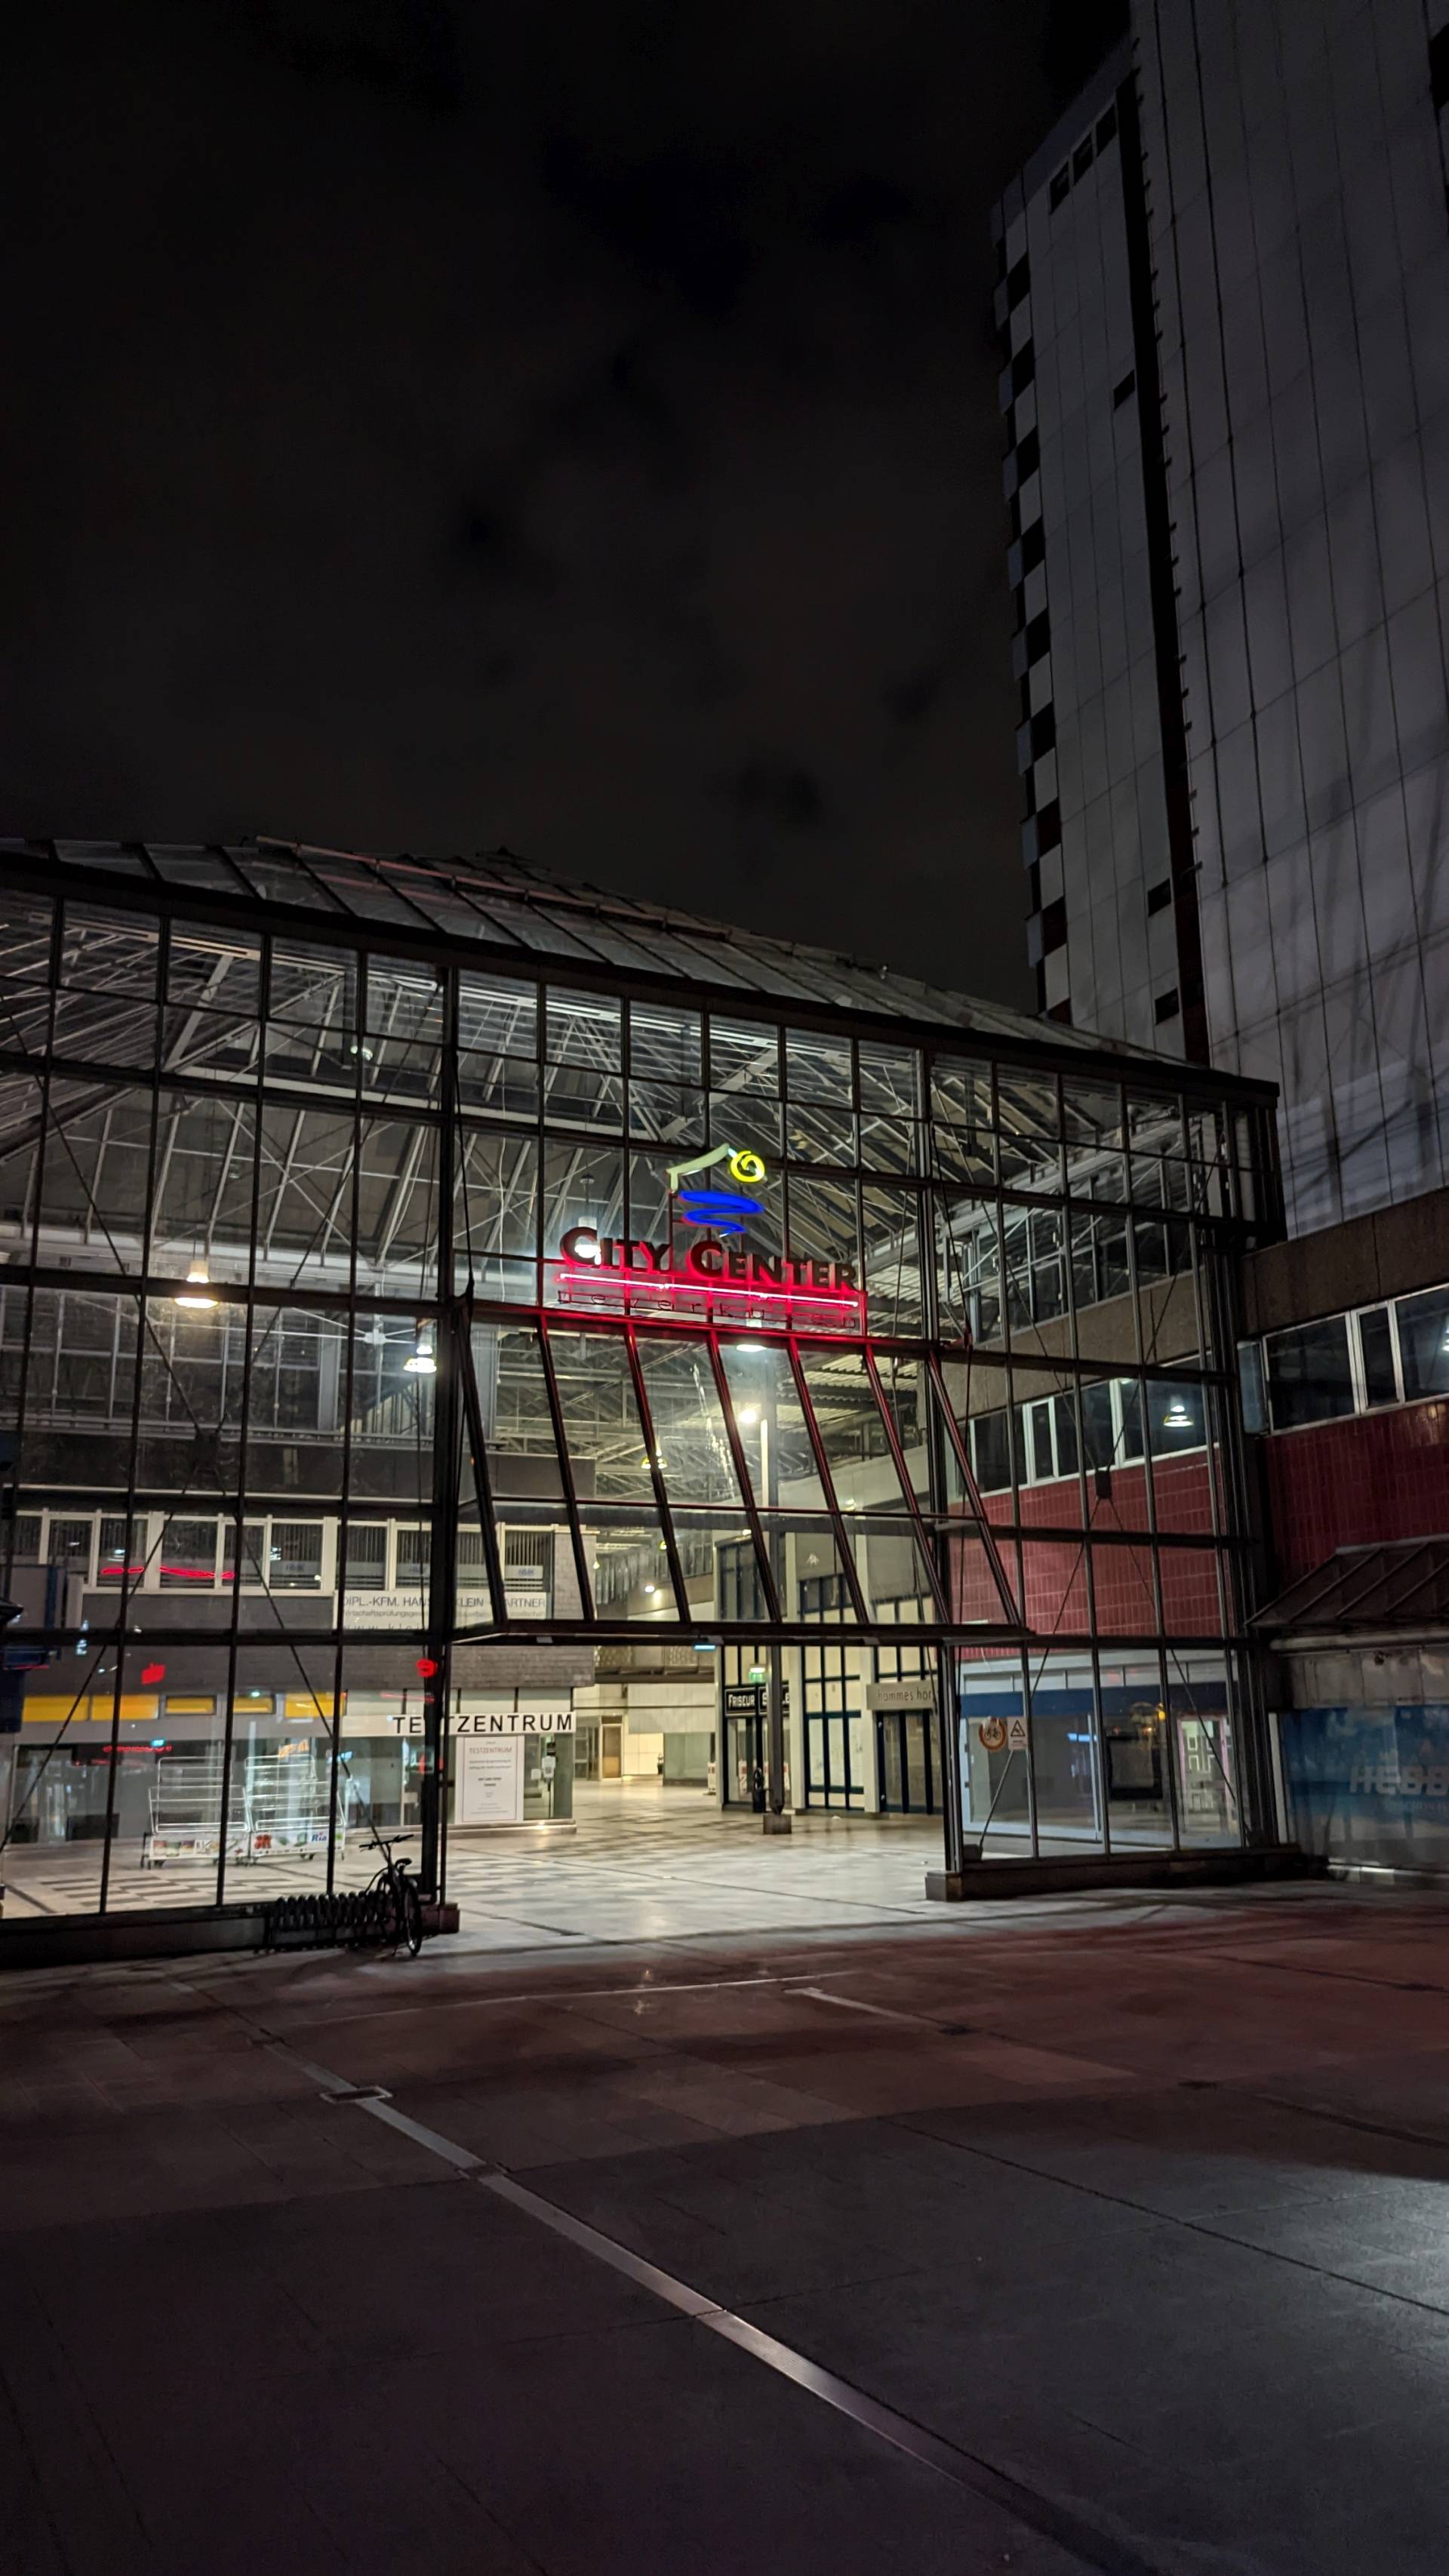 Das City Center in Leverkusen-Mitte bei Nacht. Es ist dunkel, das City Center selbst ist hell beleuchtet. Über dem Eingang zum überdachten Fußgängerbereich leuchtet der Schriftzug "City Center" samt dem Logo